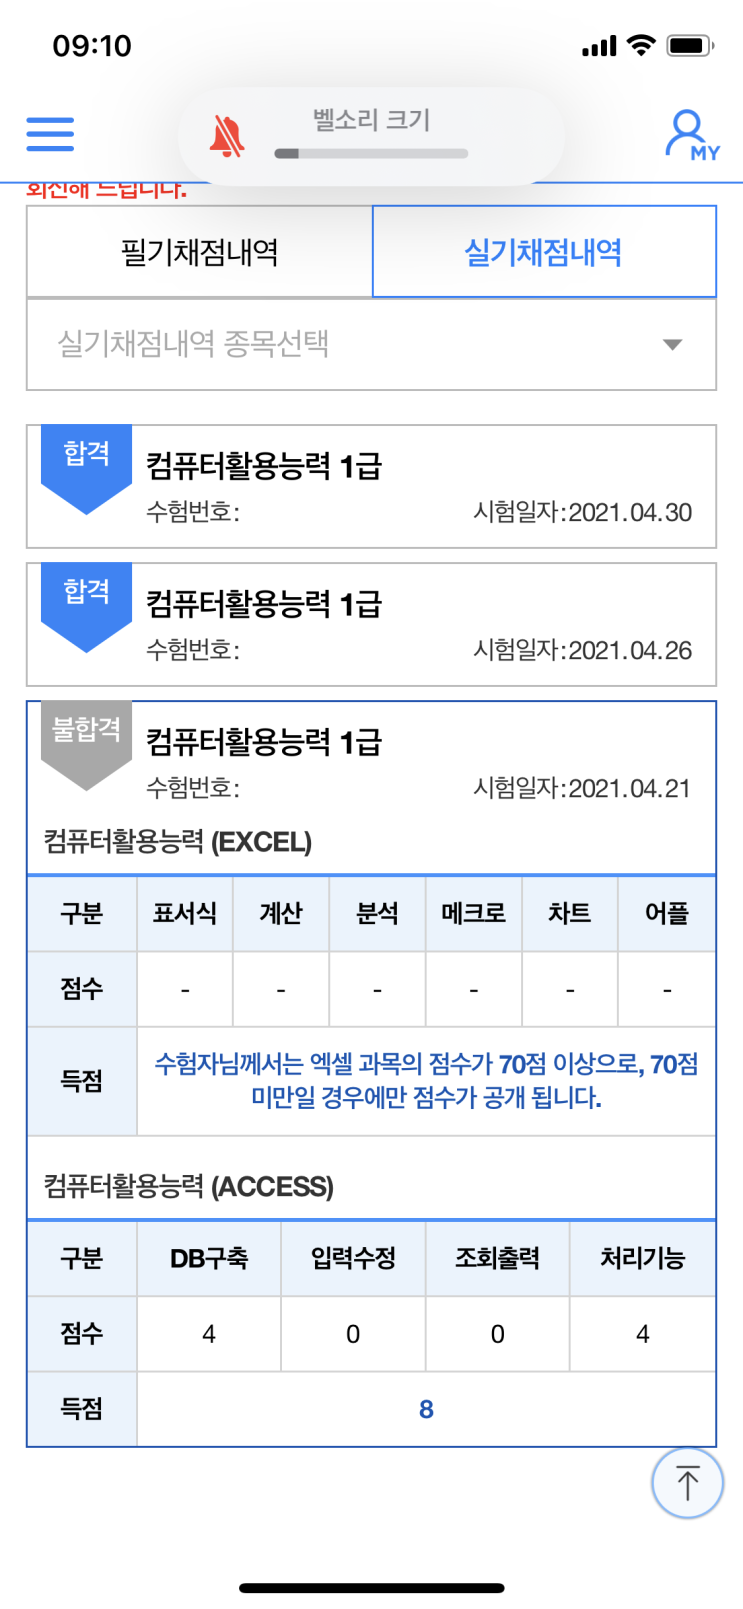 [일기] 2021. 05. 14. 컴활 1급 합격!!